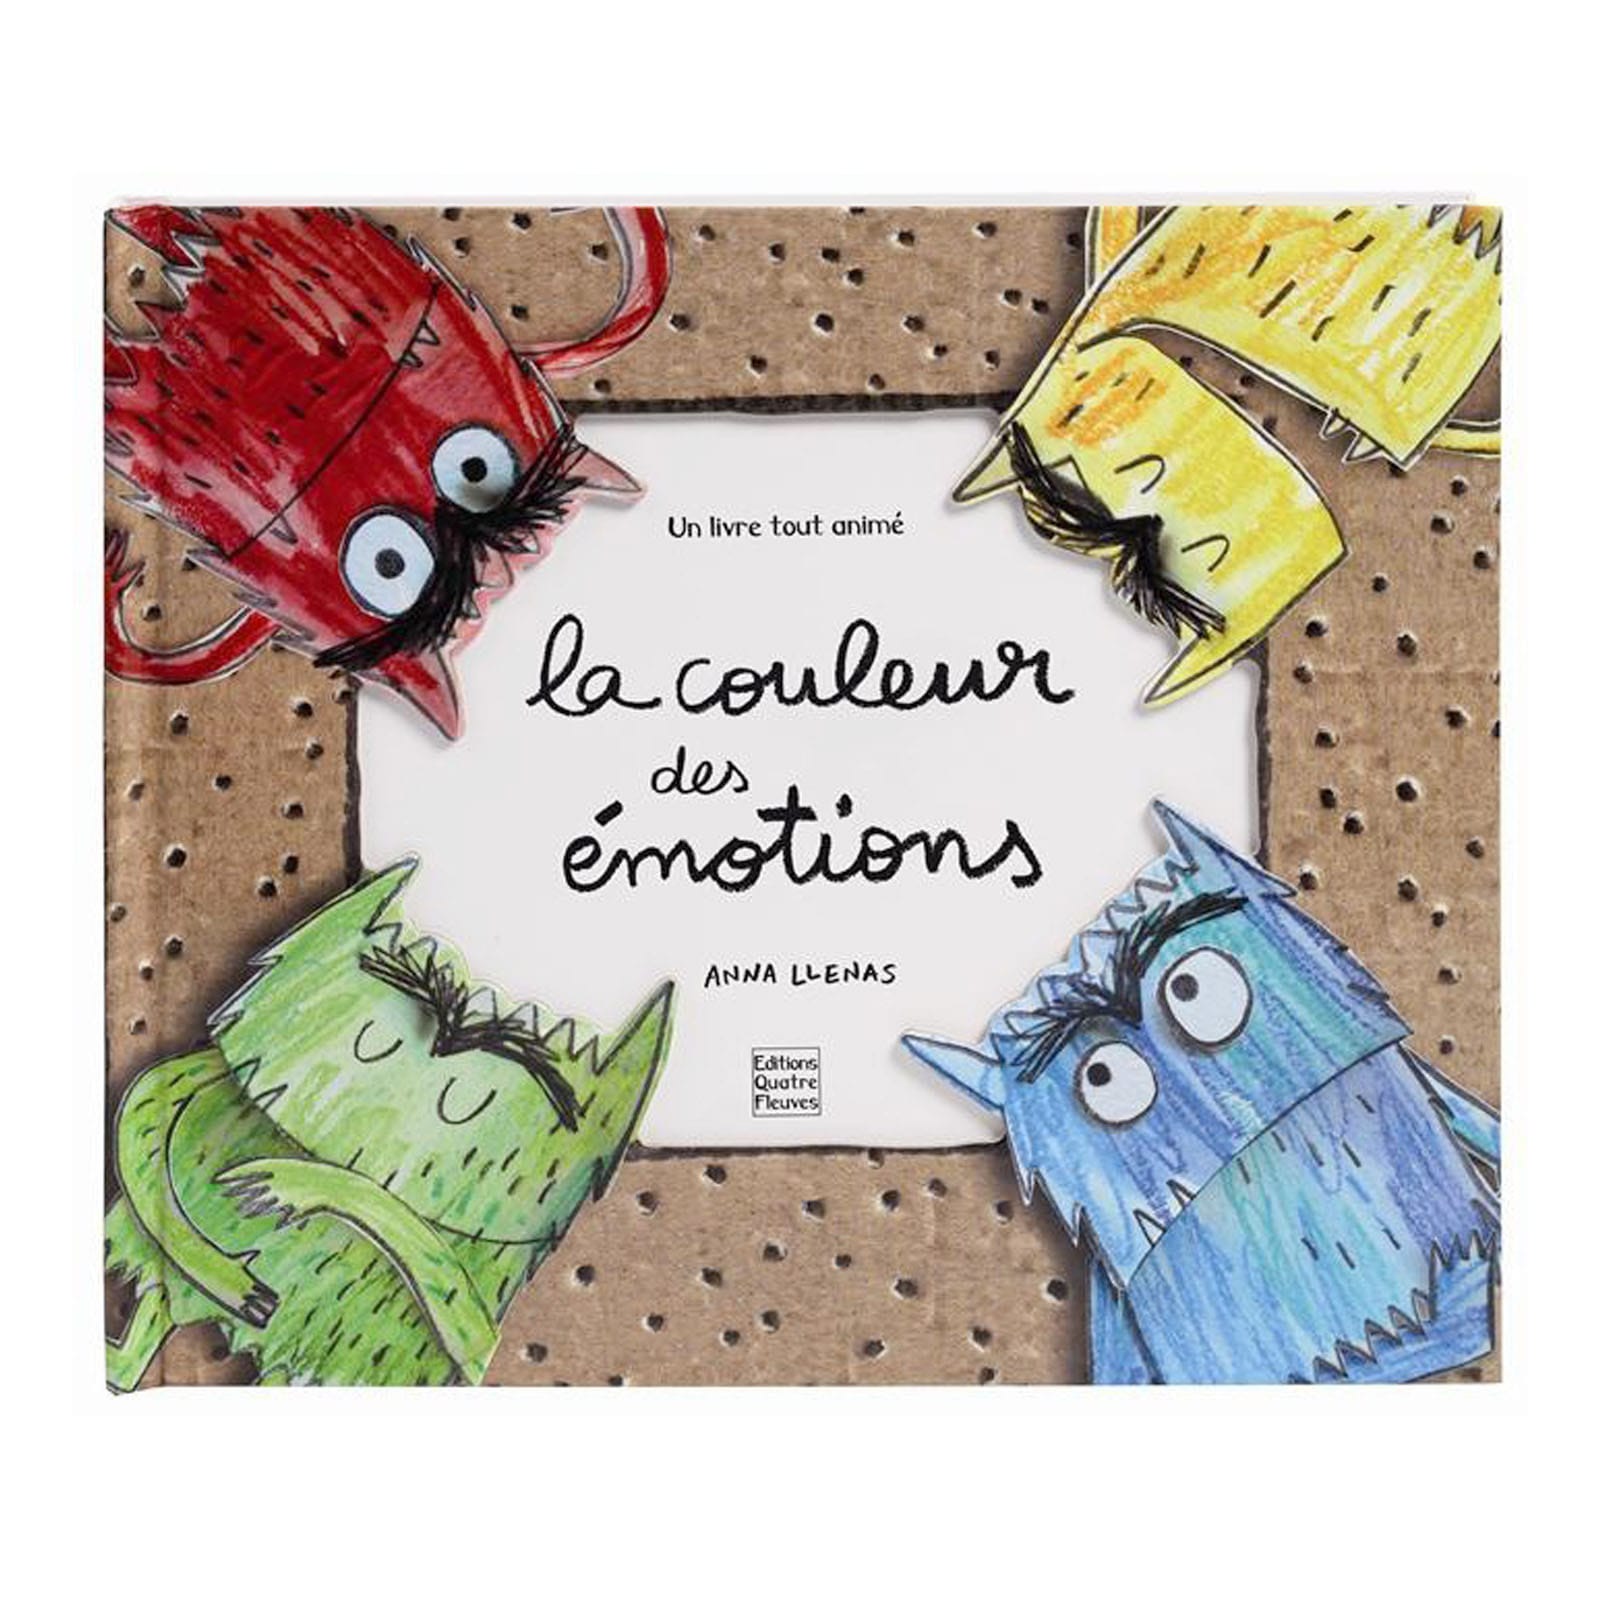 La couleur des emotions (French Edition)